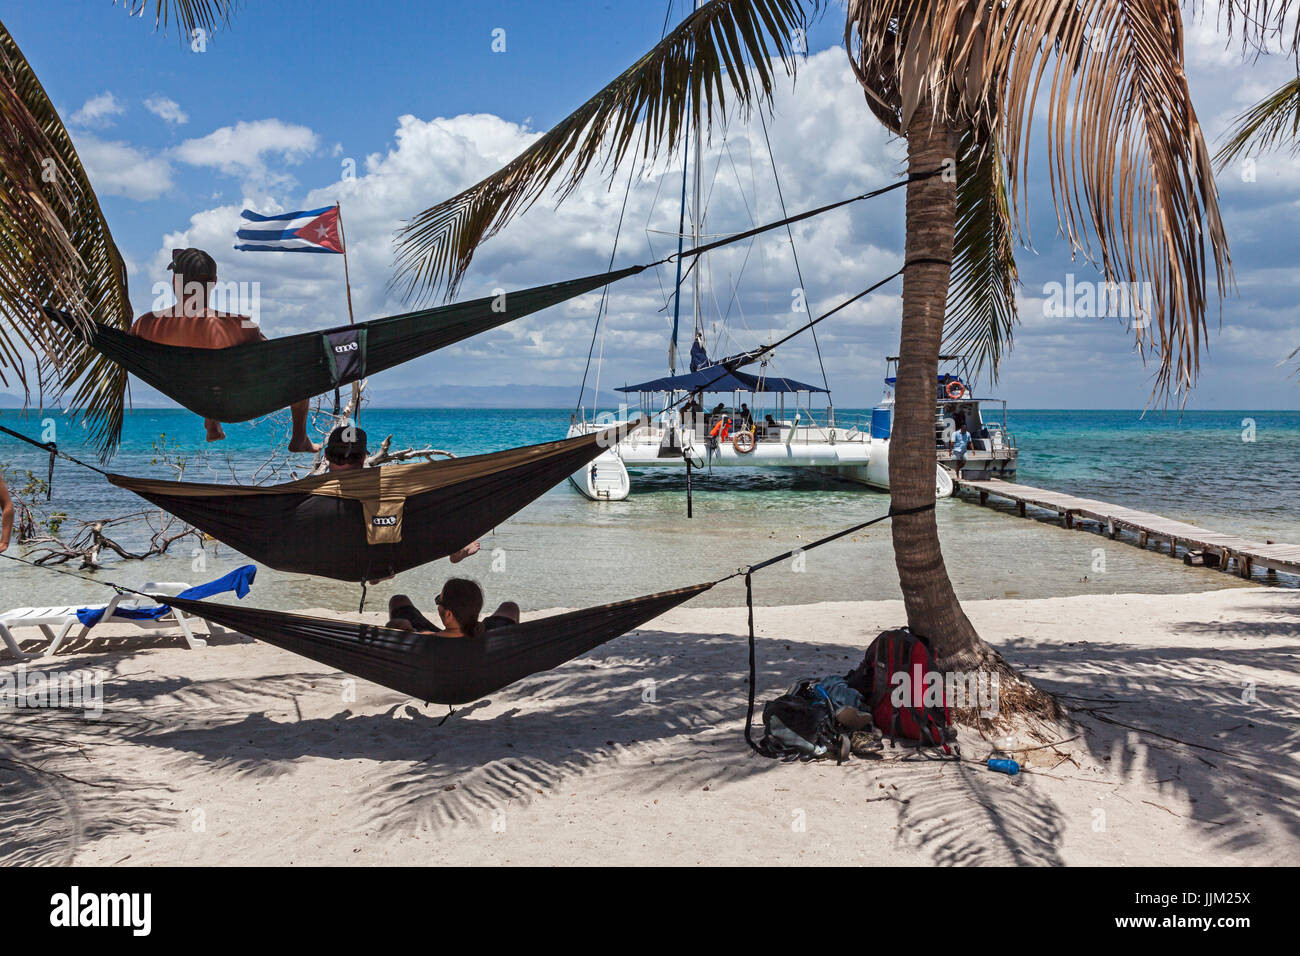 L'île tropicale de Cayo Iguana accessibles par bateau depuis Playa Ancon  est une destination touristique - Trinidad, Cuba Photo Stock - Alamy